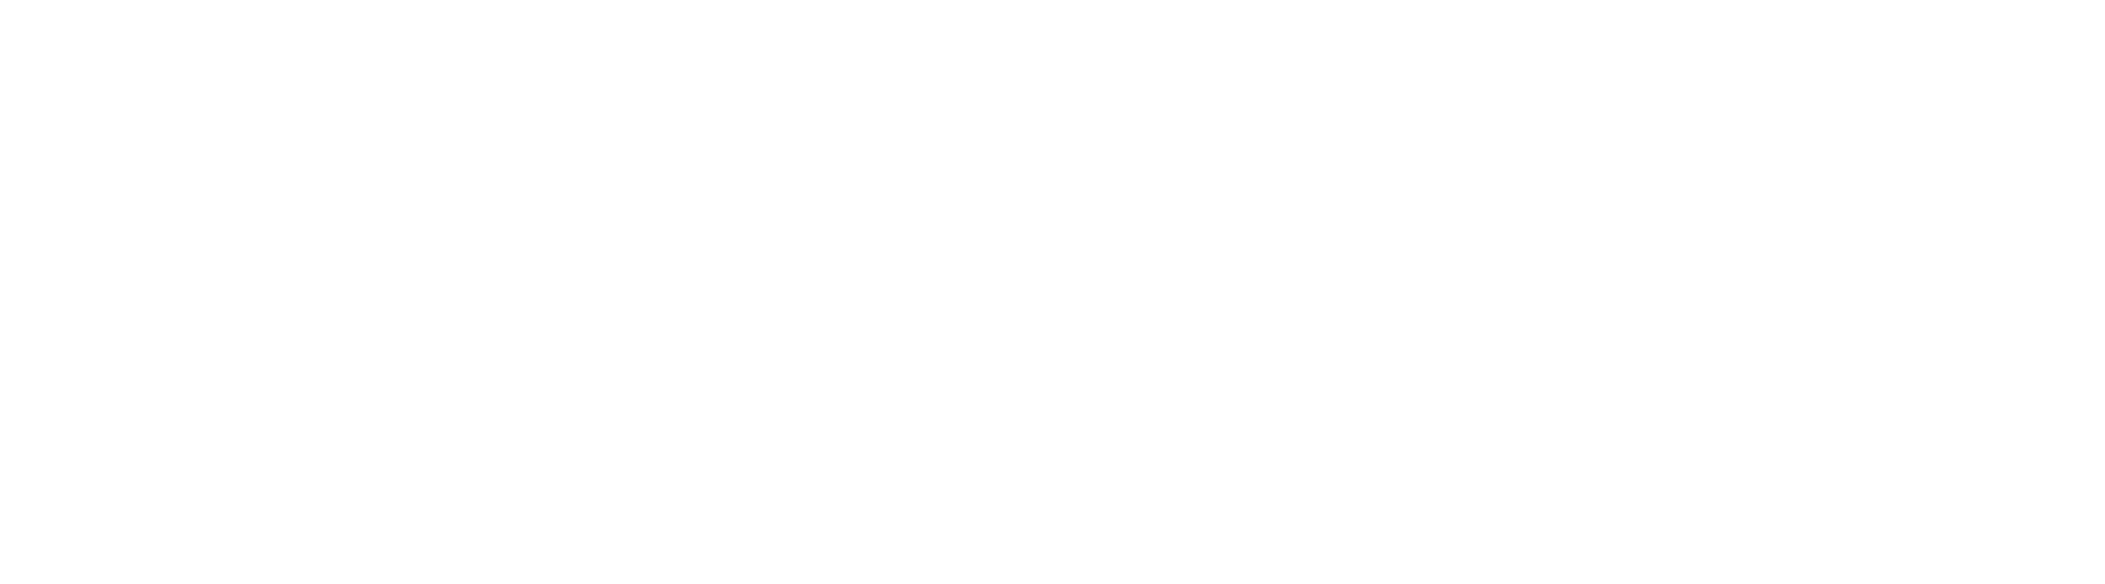 VyprVPN Support Help Center home page